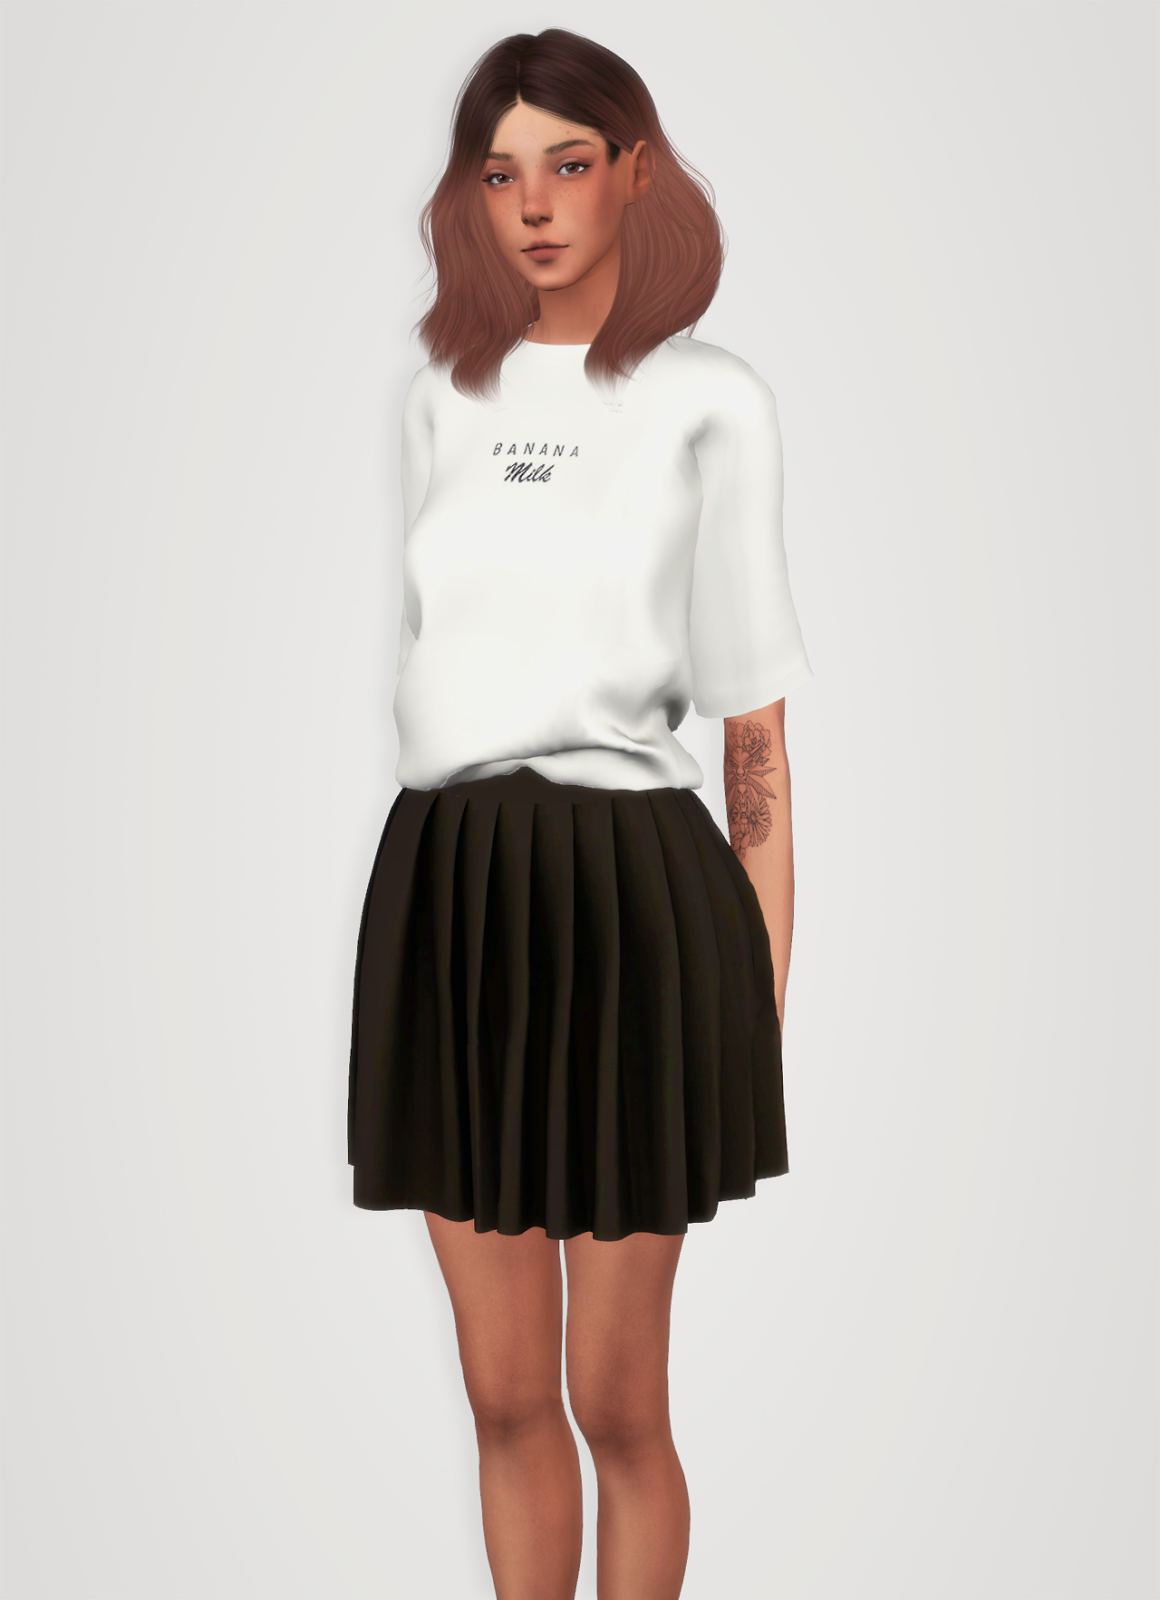 Sims 4 Female Clothing Cc Ruleszoom